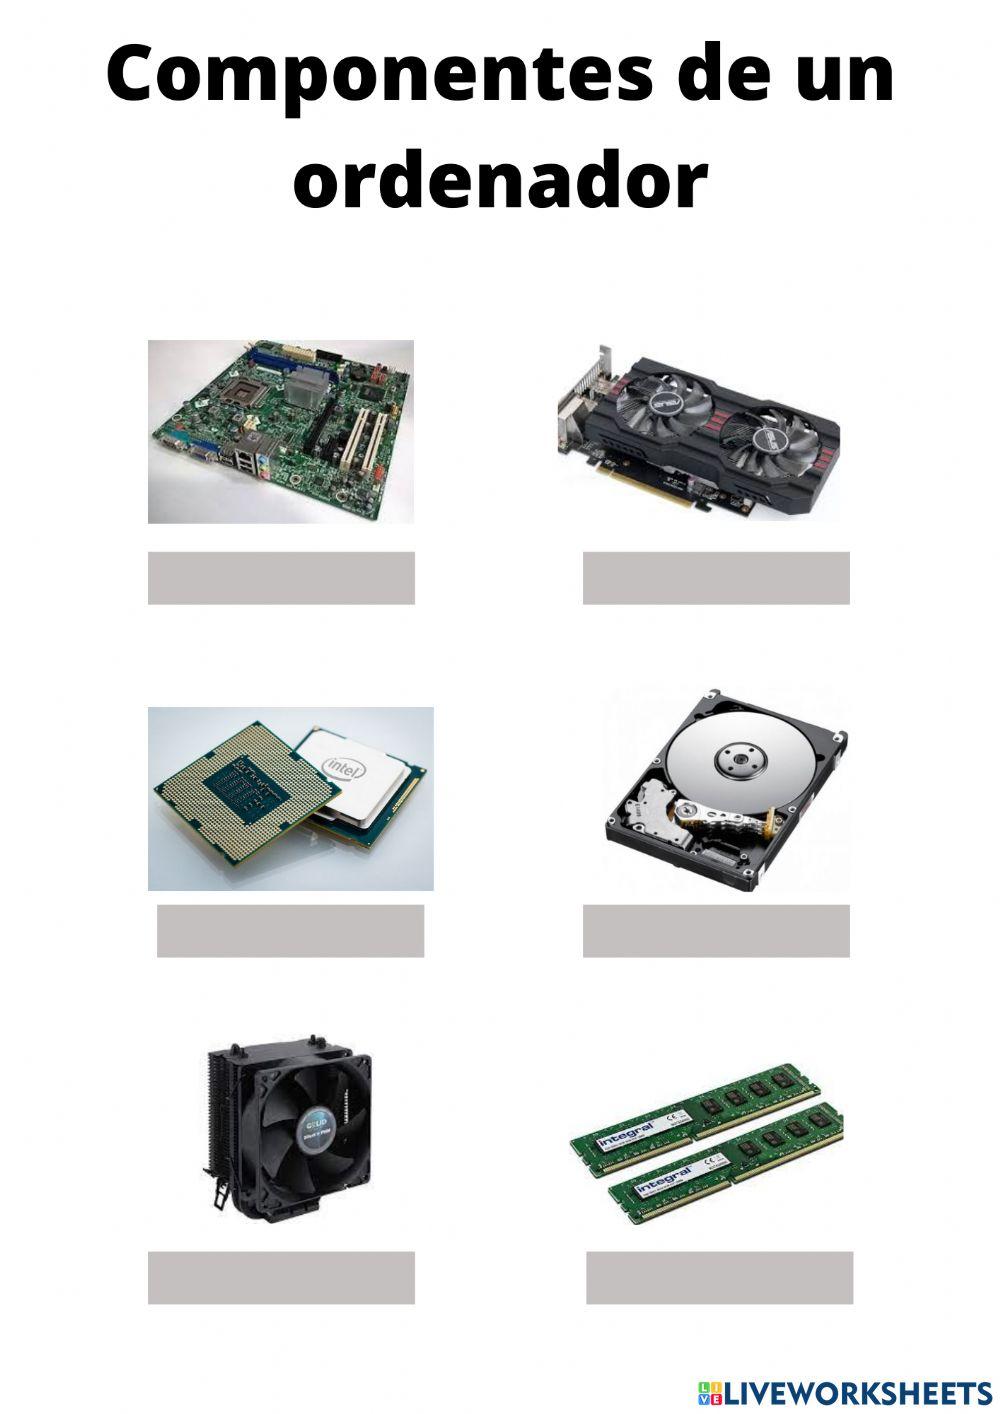 Componentes de un ordenador